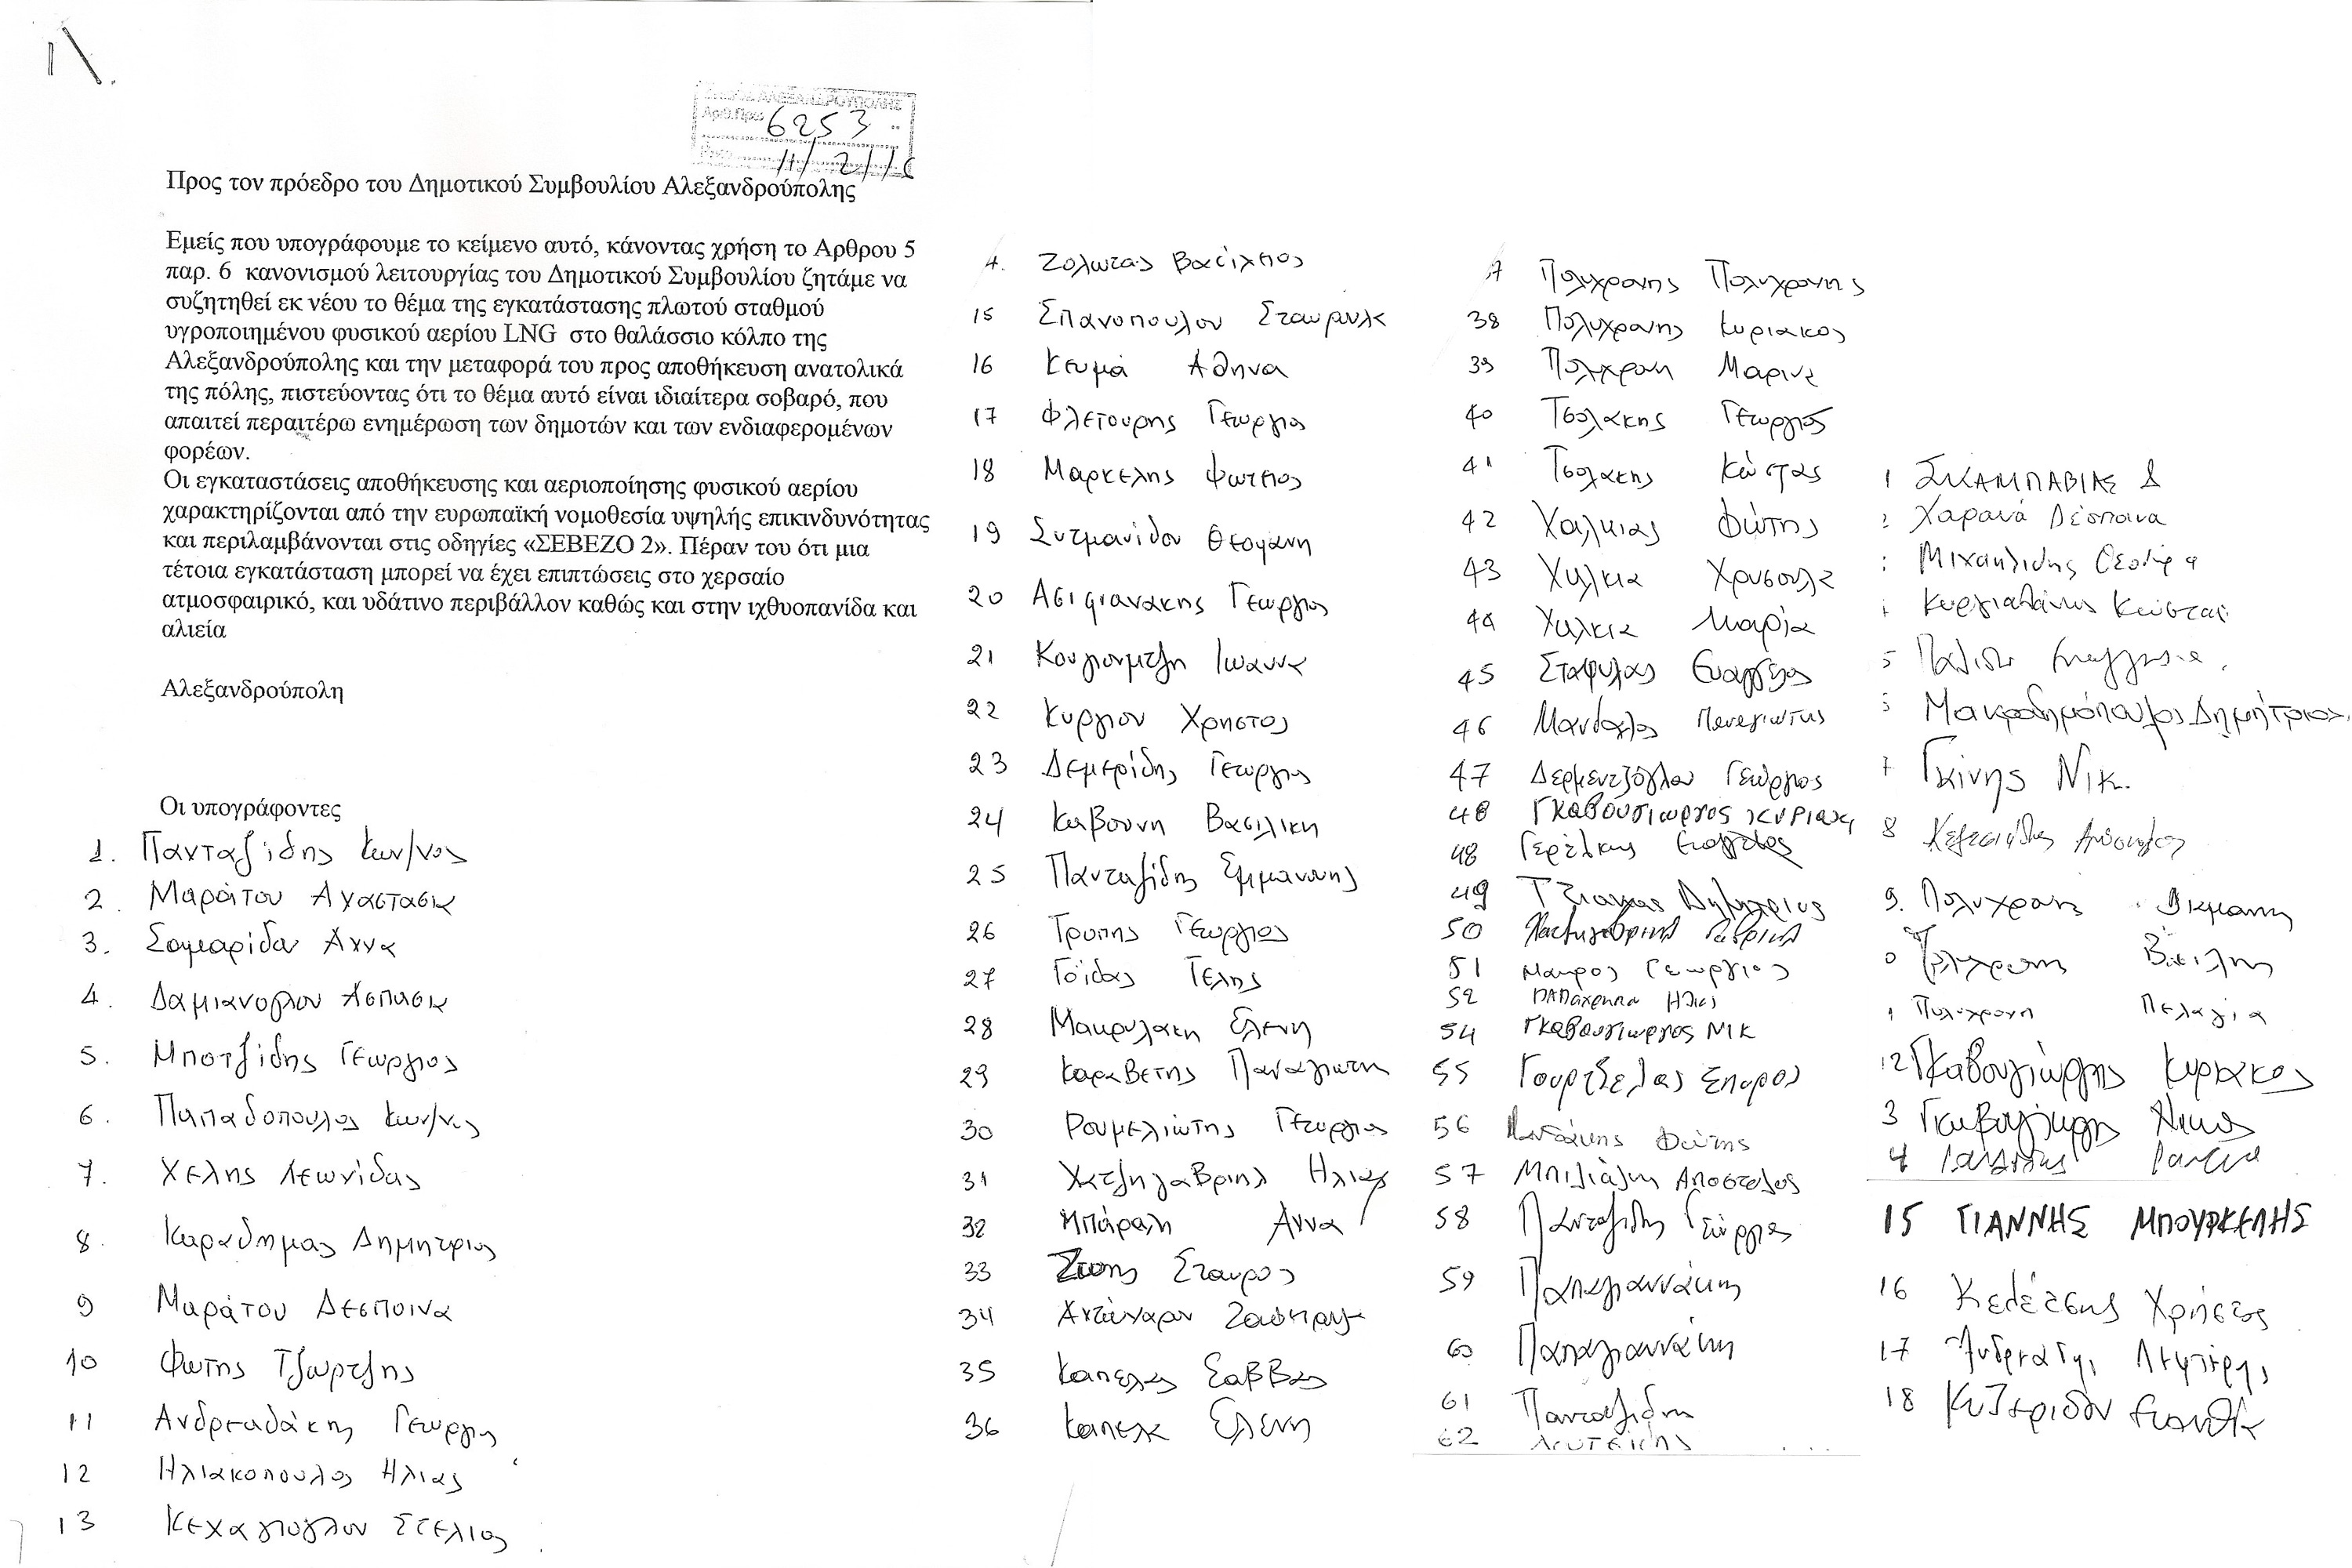 Αίτημα 80 πολιτών για πρόκληση συζήτησης στο Δ.Σ. για το θέμα του ΑΣΦΑ Αλεξανδρούπολης (επένδυση LNG Ομίλου Κοπελούζου) βάσει του άρθρου 5 παρ. 6 του Κανονισμού Λειτουργίας του Δημοτικού Συμβουλίου Αλεξανδρούπολης